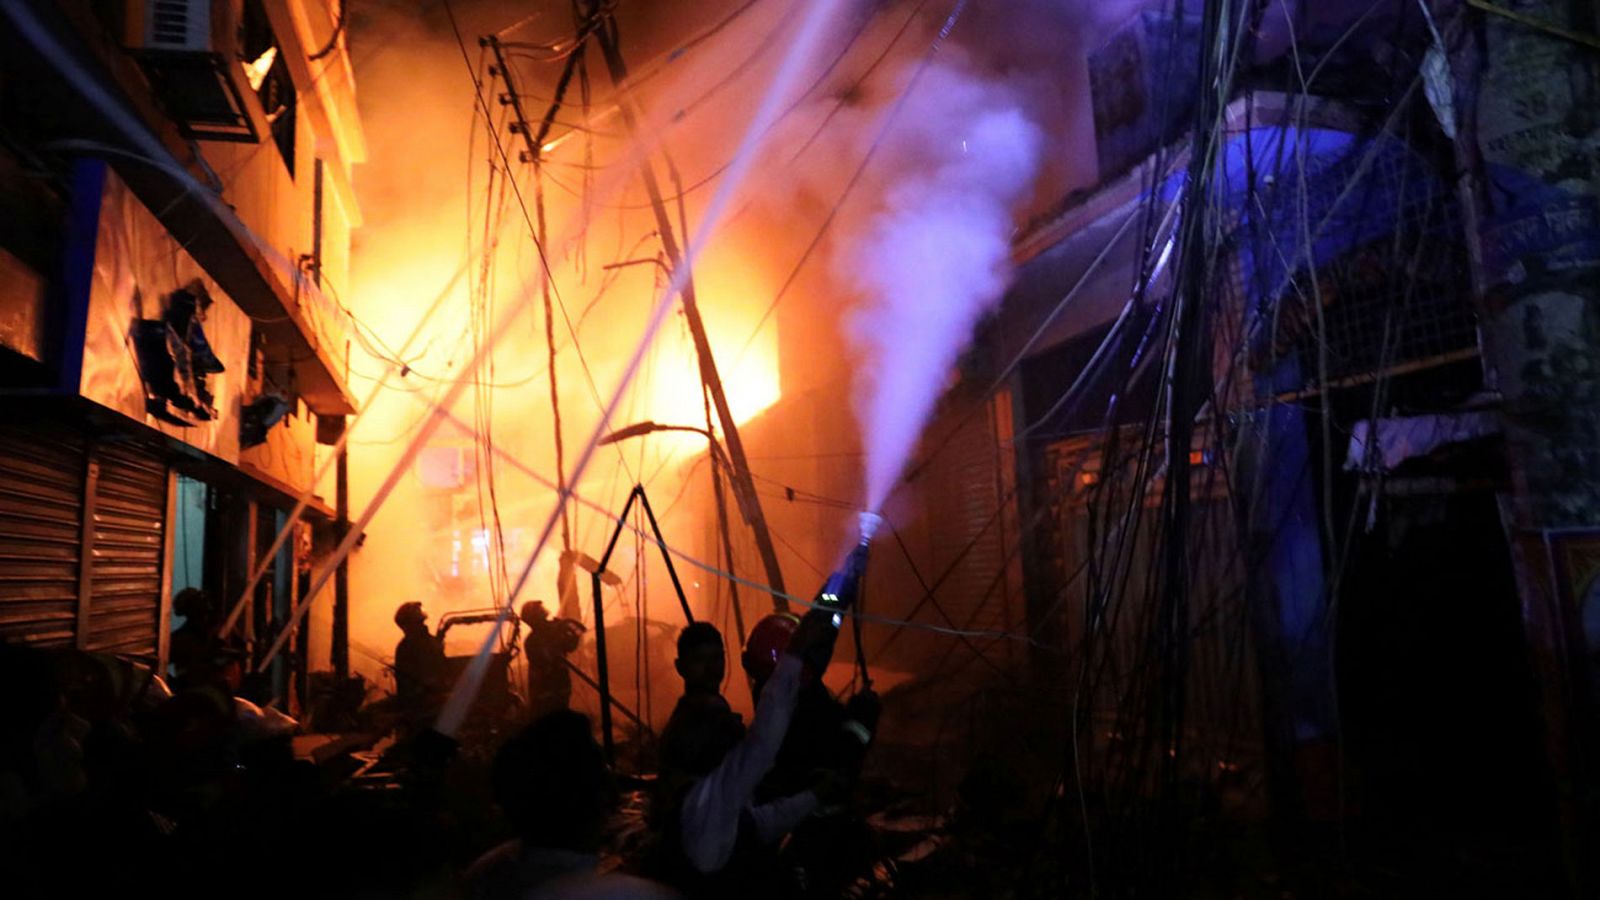 Incendio Bangladesh: Un incendio masivo en un barrio de Bangladesh causa al menos 67 muertos - RTVE.es